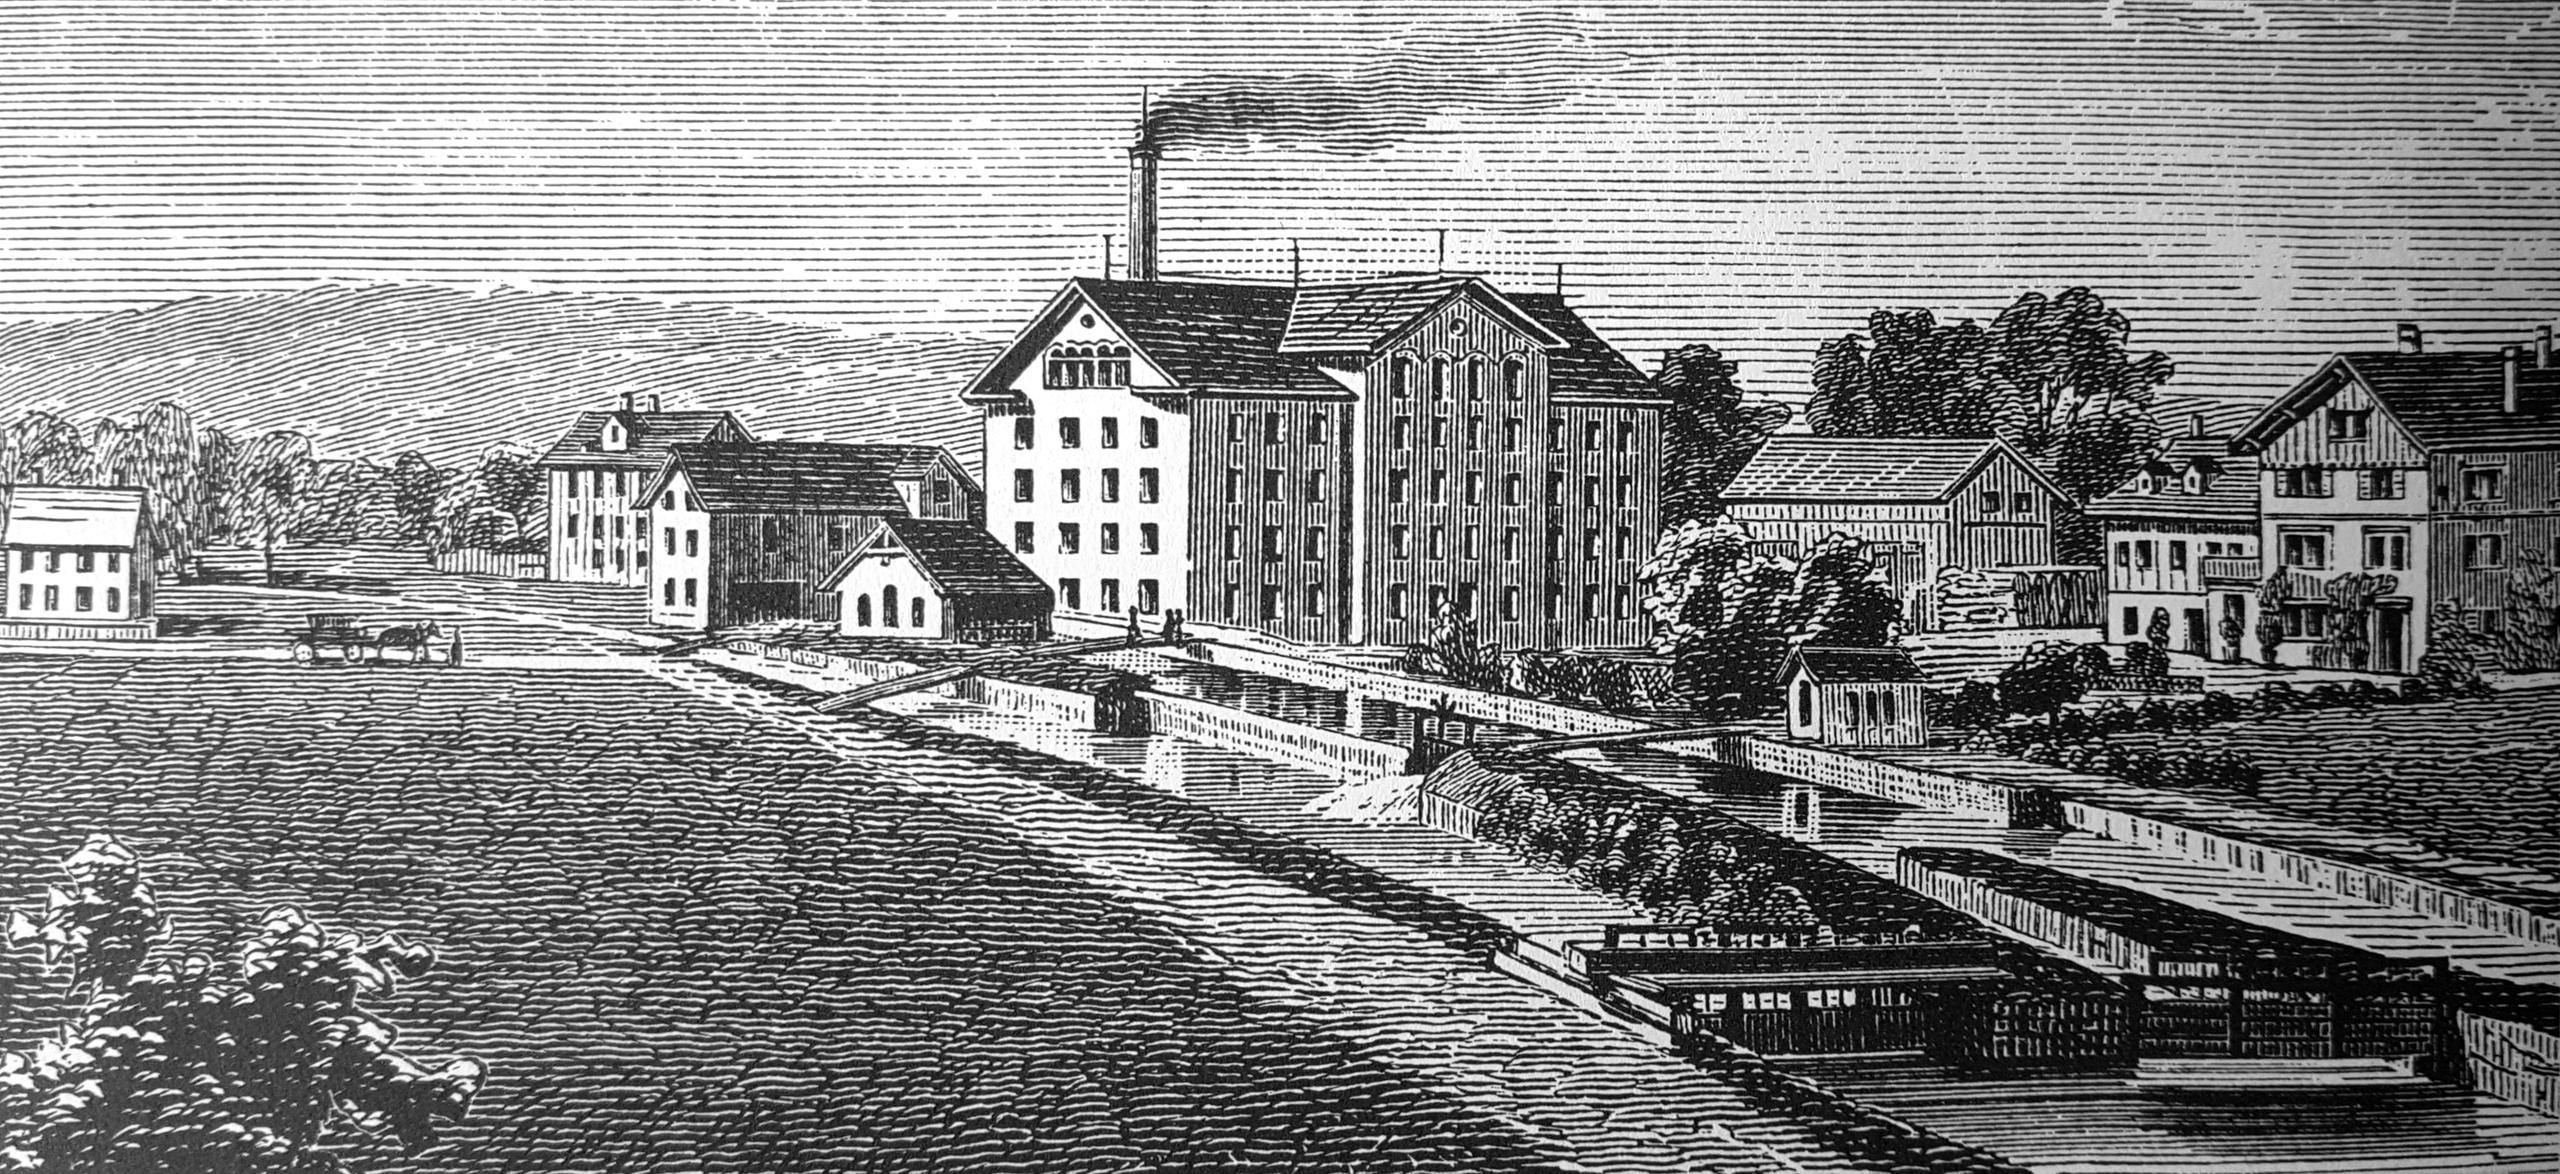 ткацкое производство в городе Устер (Uster) в примерно 1900 году.